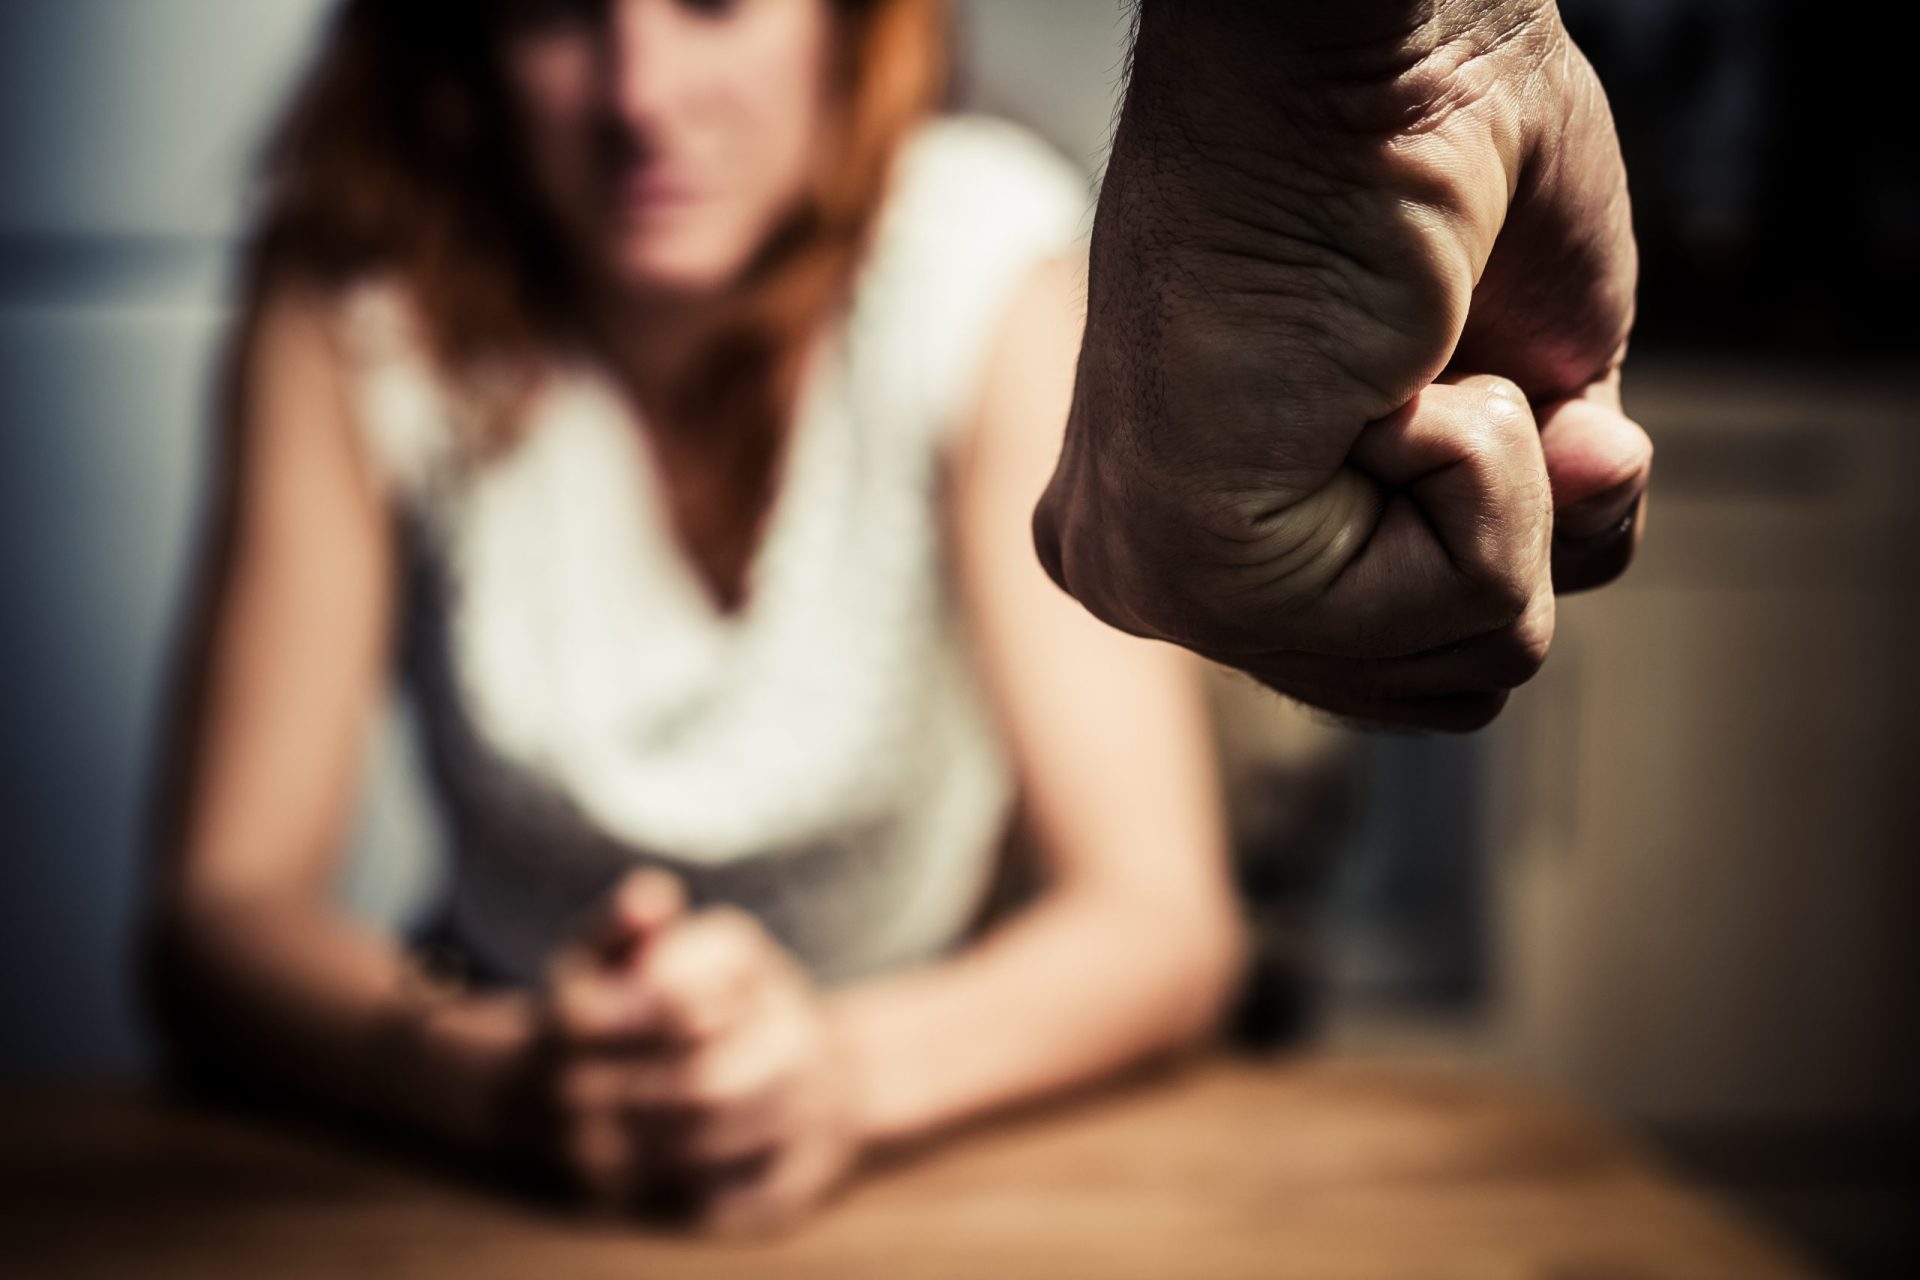 Governo admite falhas no apoio às vítimas de violência doméstica